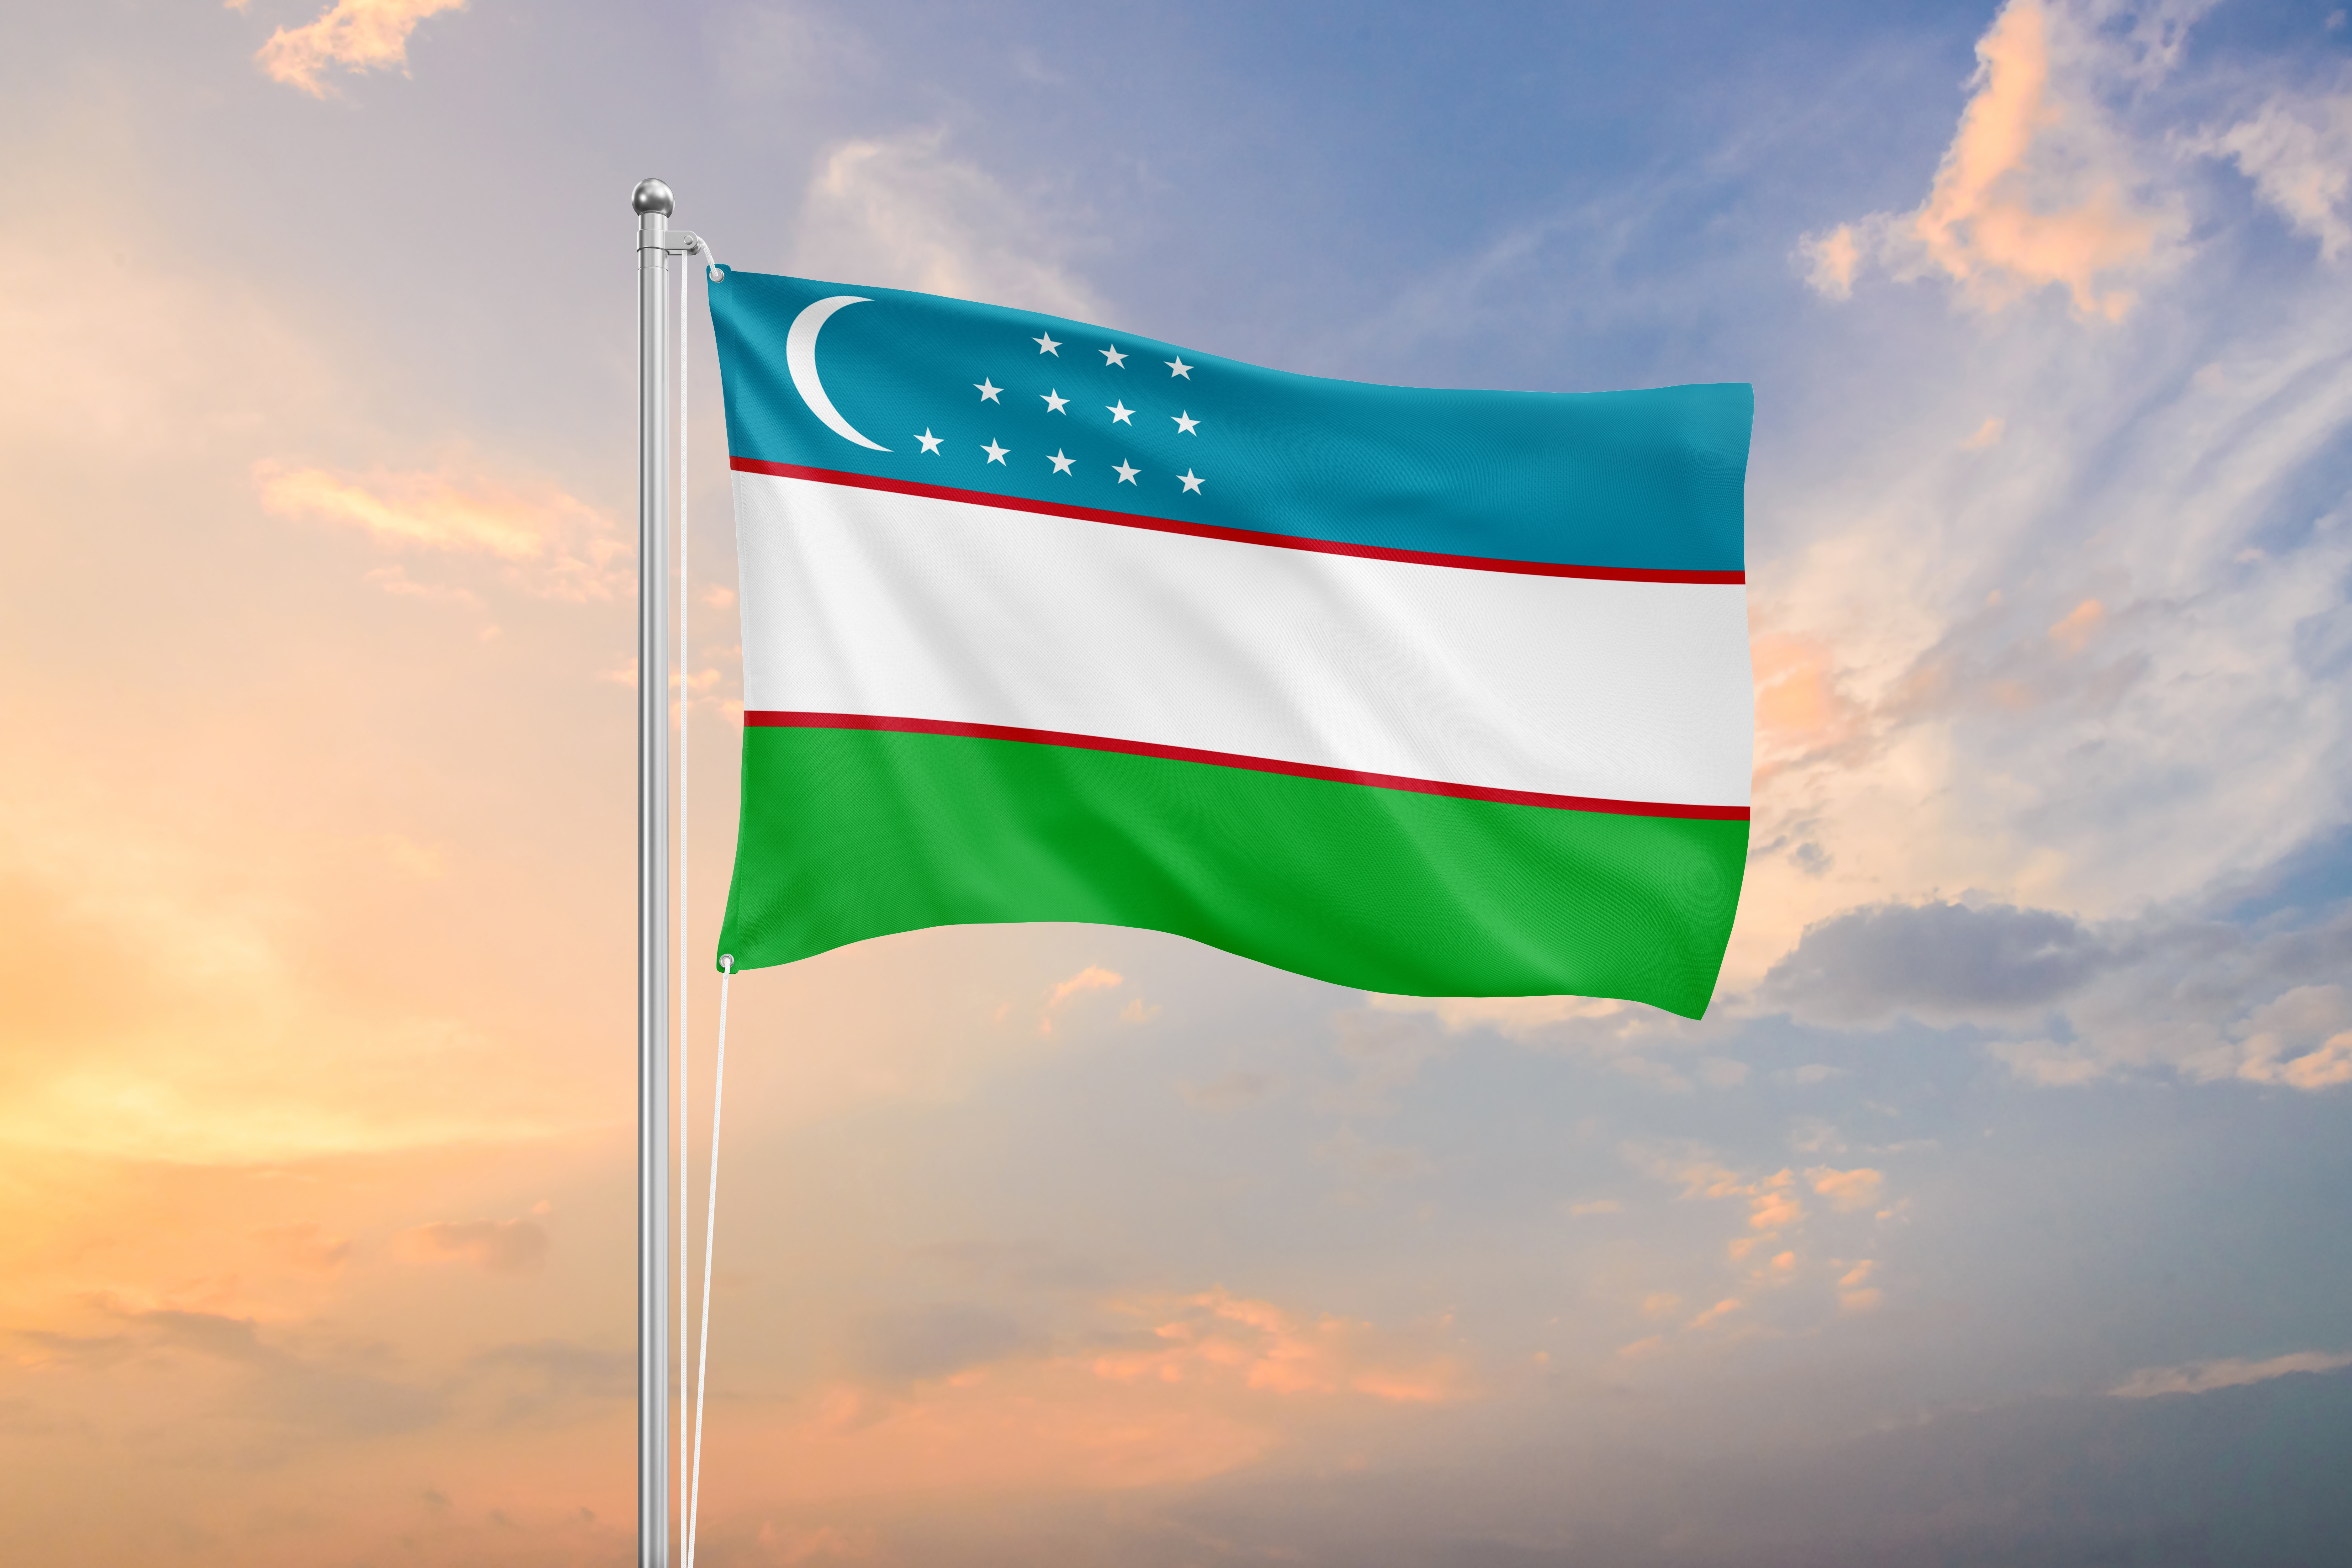 The flag symbolizes the citizenship of Uzbekistan